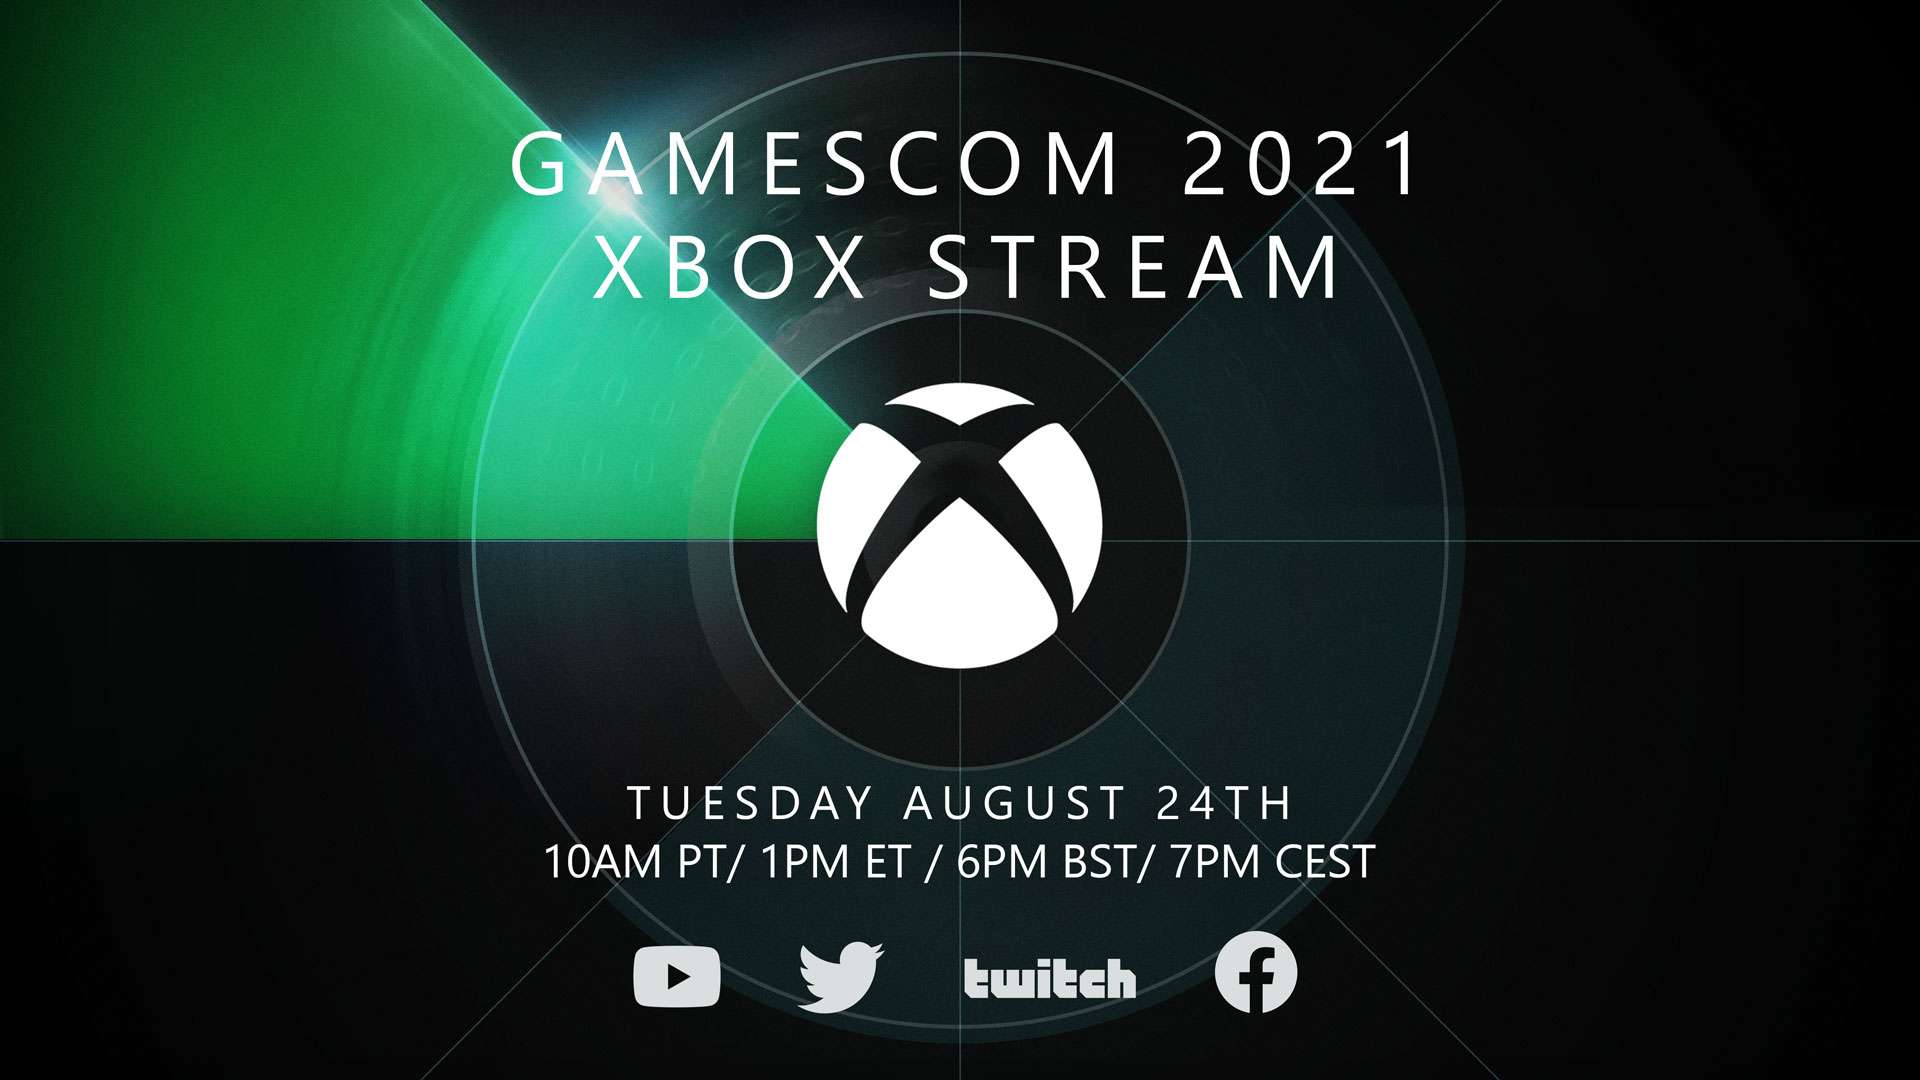 رویداد ایکس باکس در Gamescom 2021